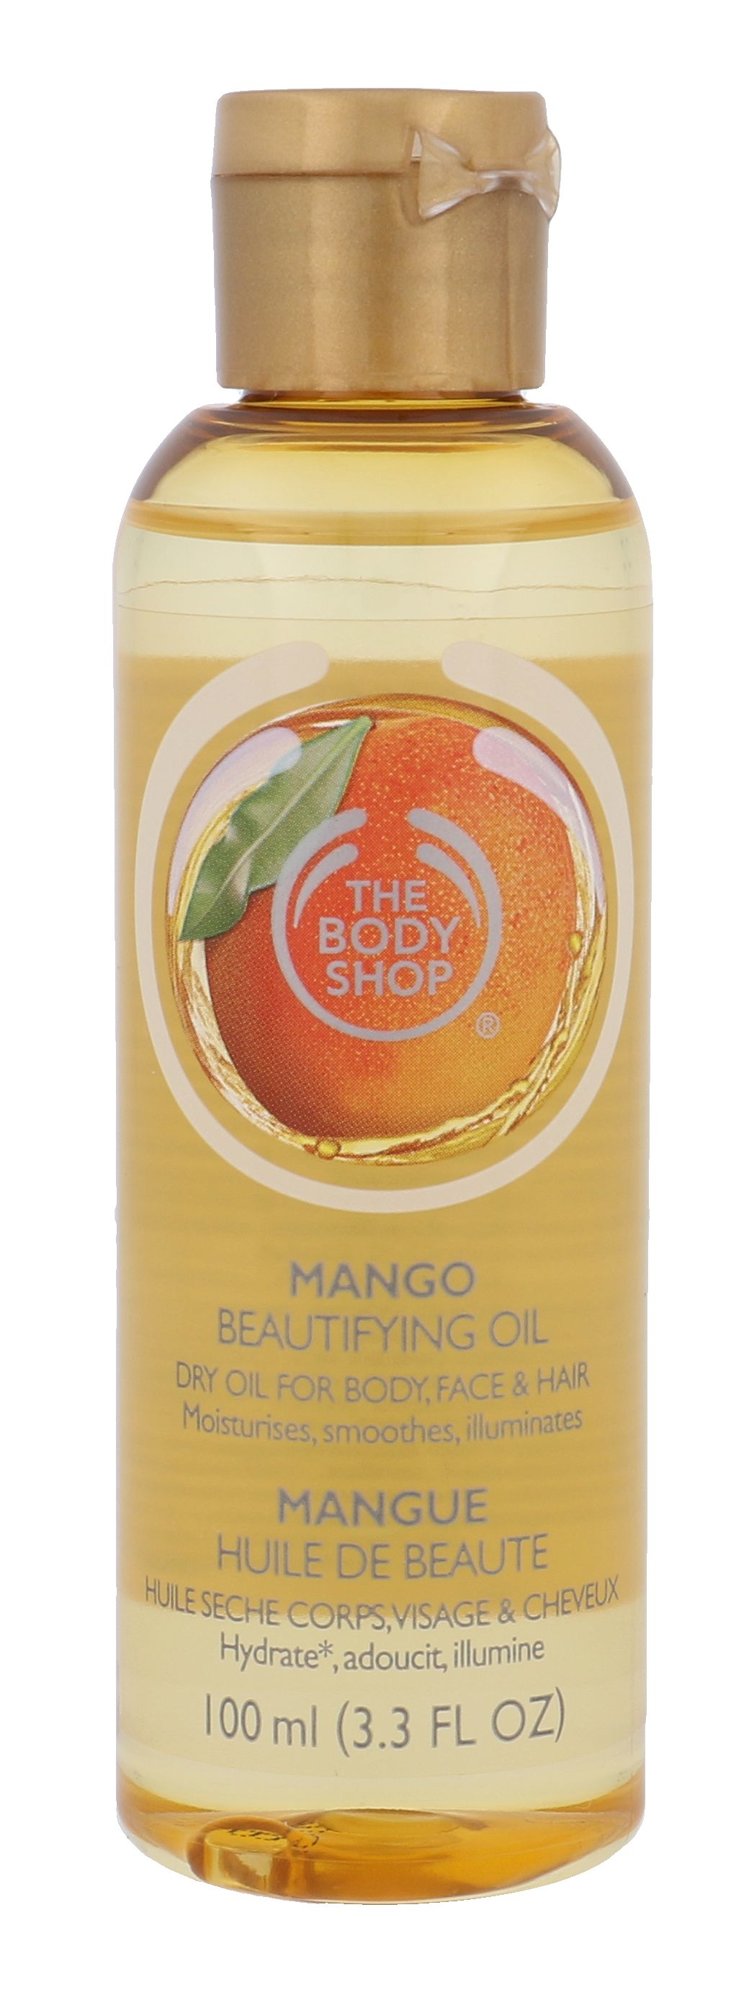 The Body Shop Mango Beautifying Oil